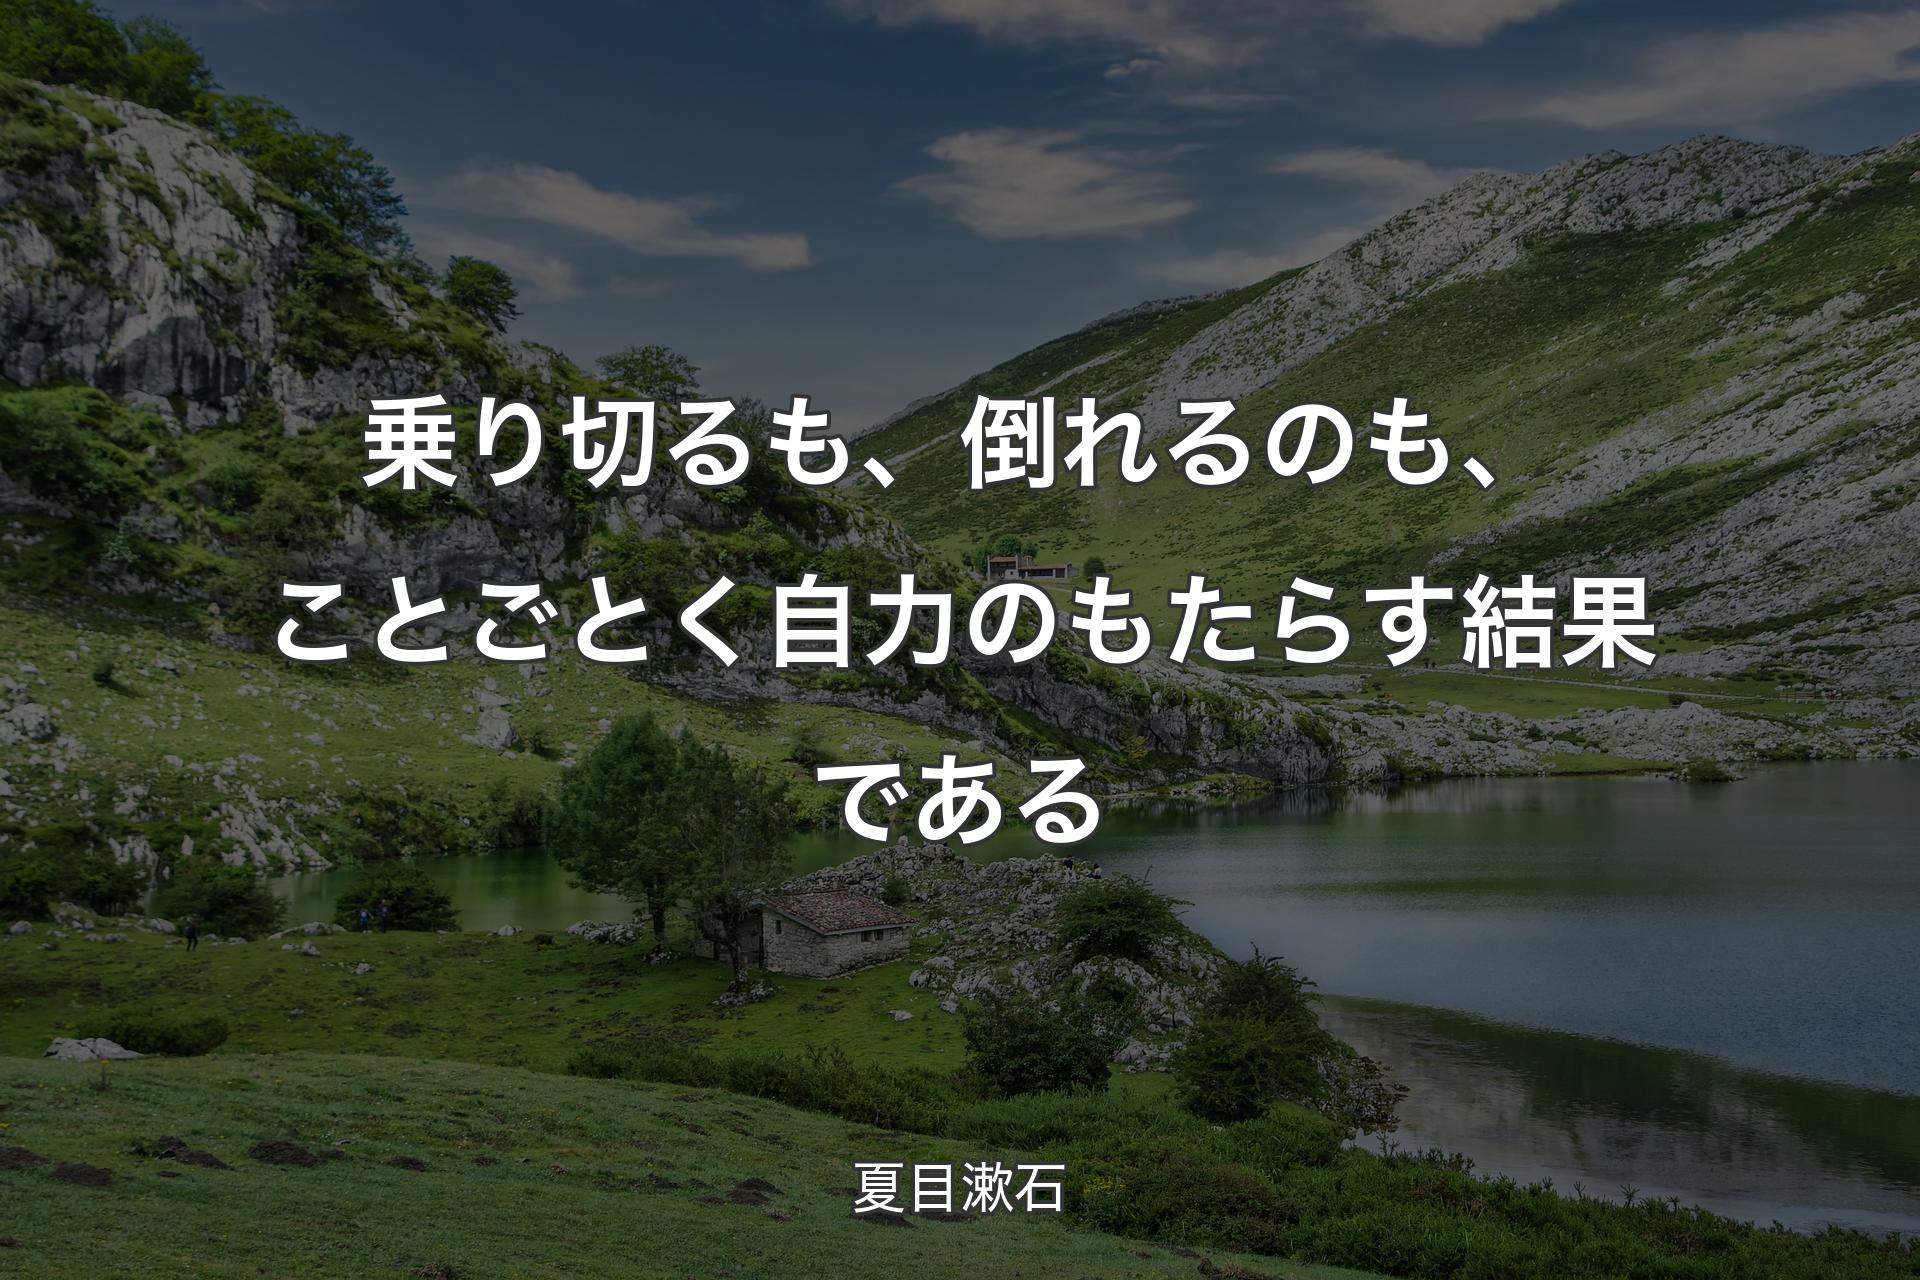 【背景1】乗り切るも、倒れるのも、ことごとく自力のもたらす結果である - 夏目漱石